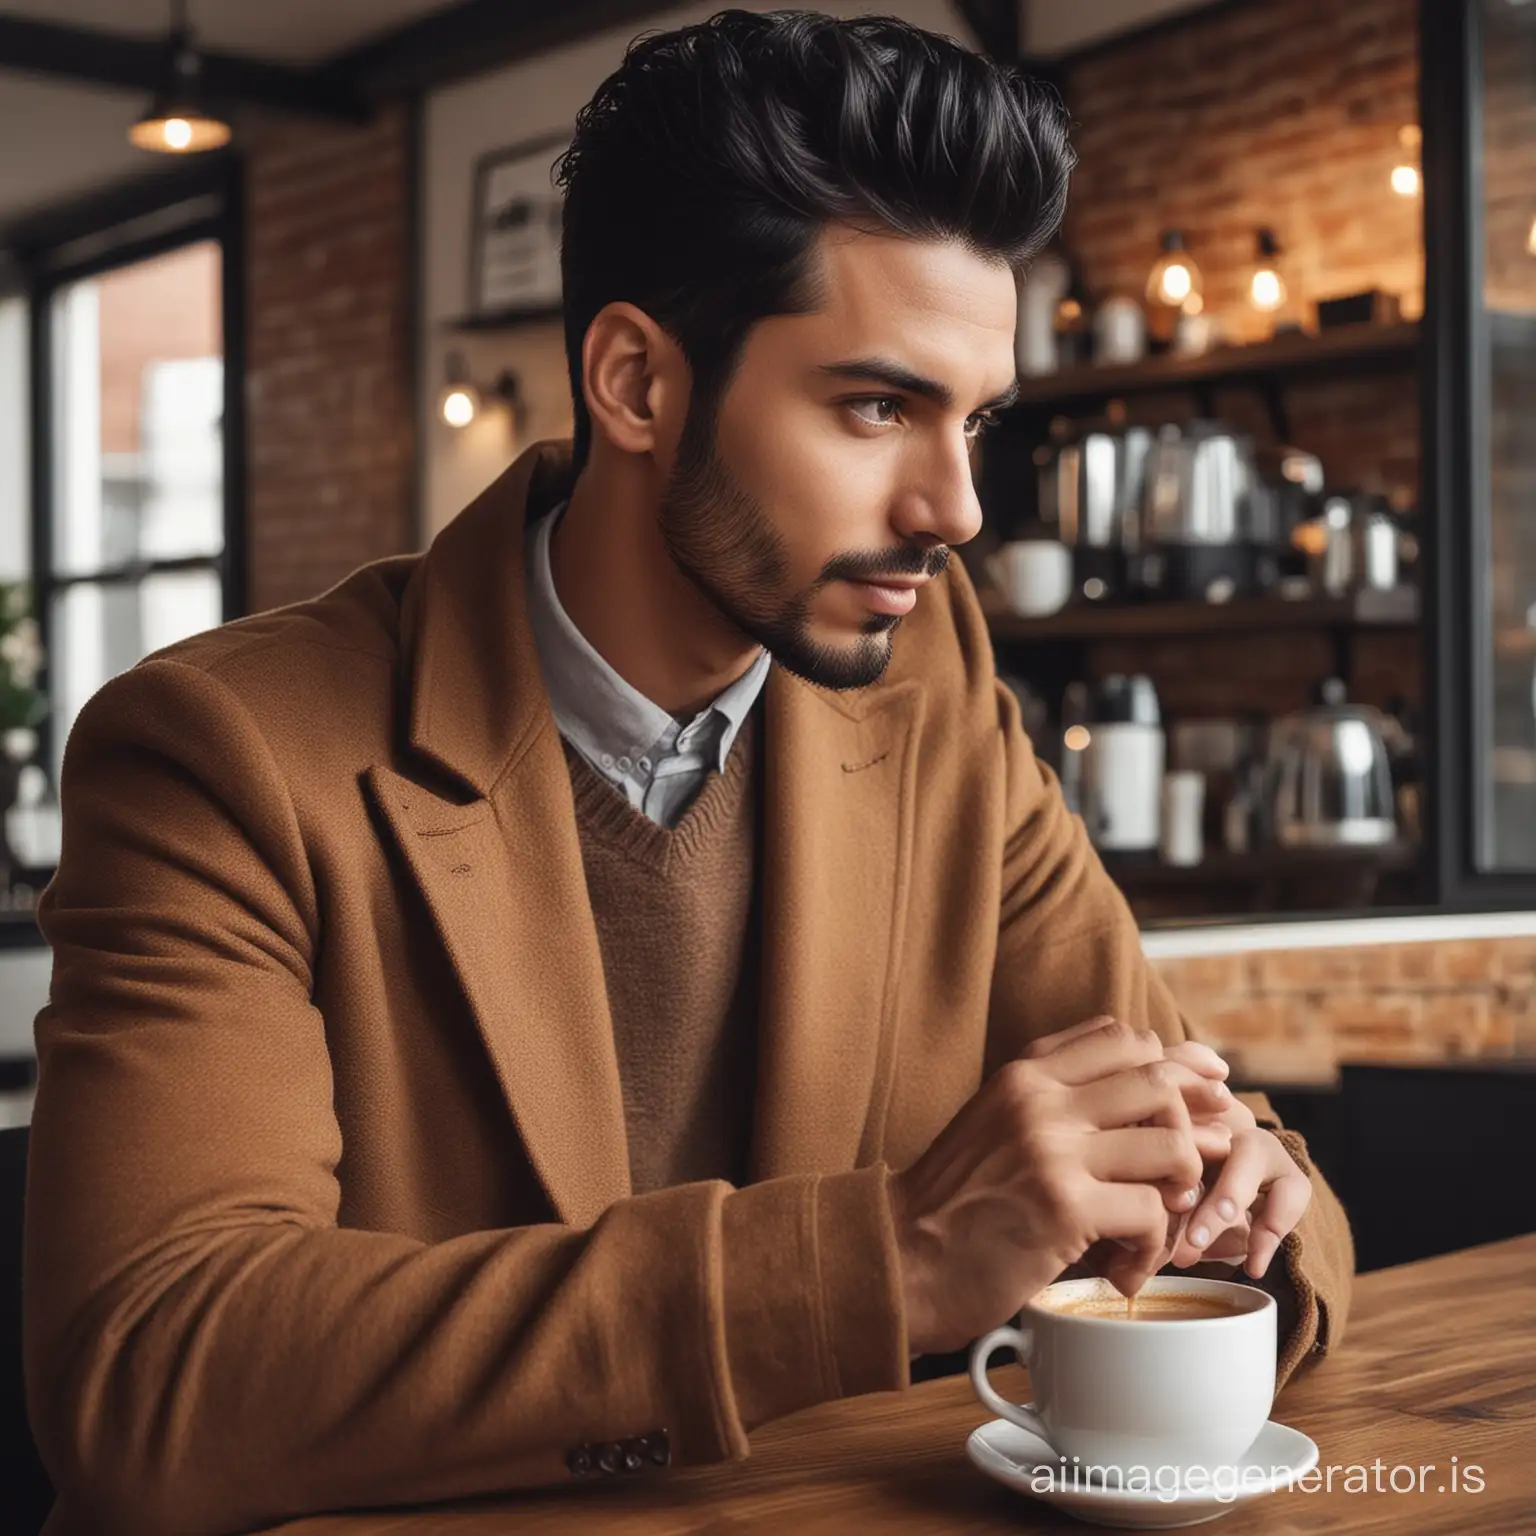 A stylish black hair man in coffee